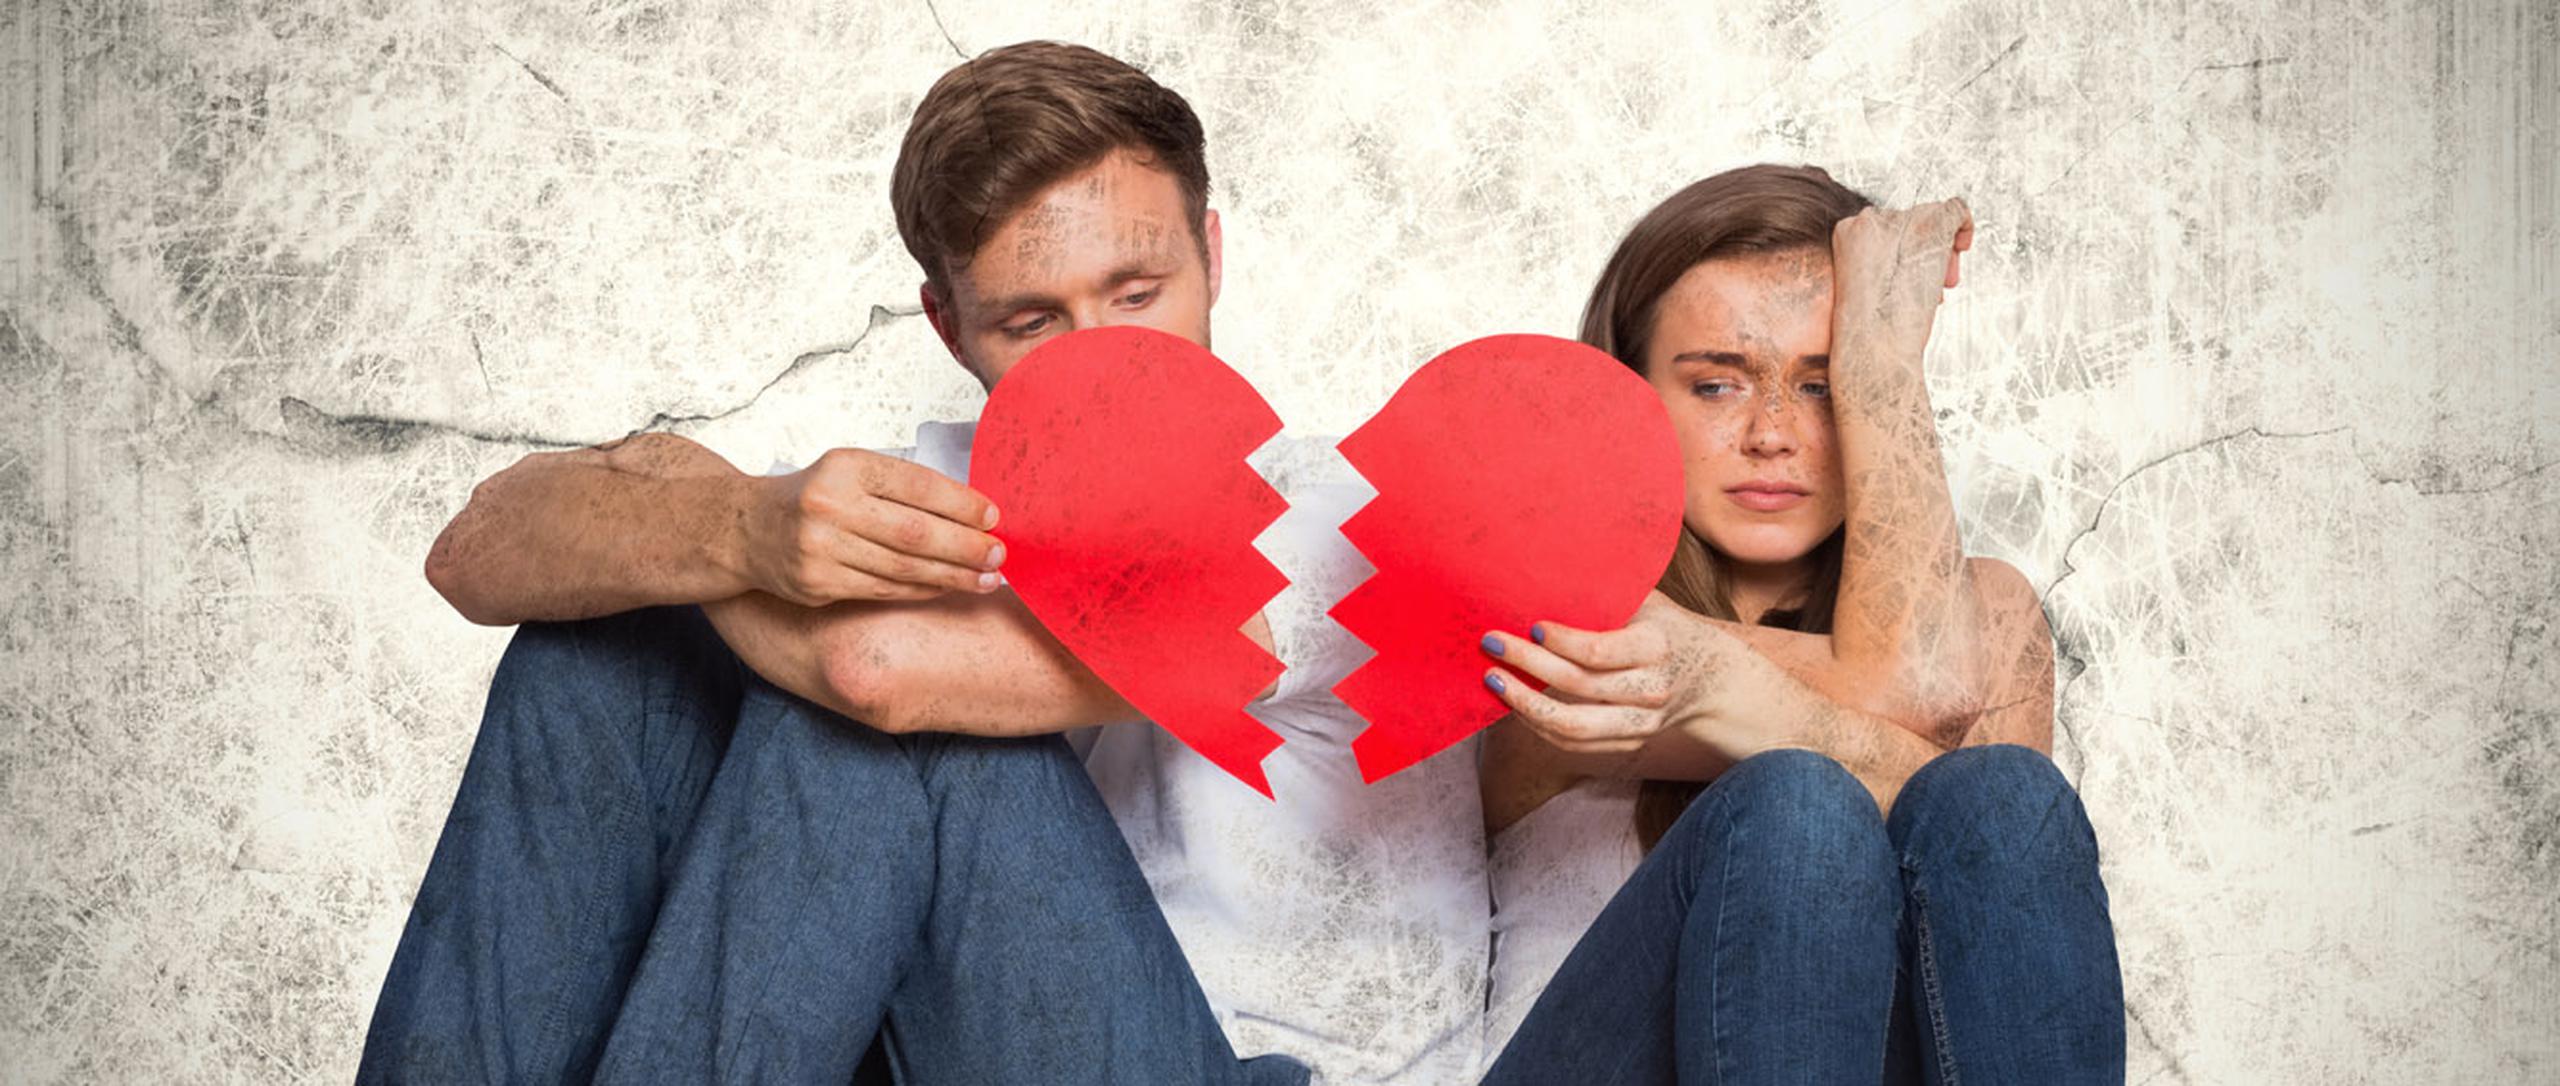 Existen muchos motivos absurdos para no terminar una mala relación. (Shutterstock)